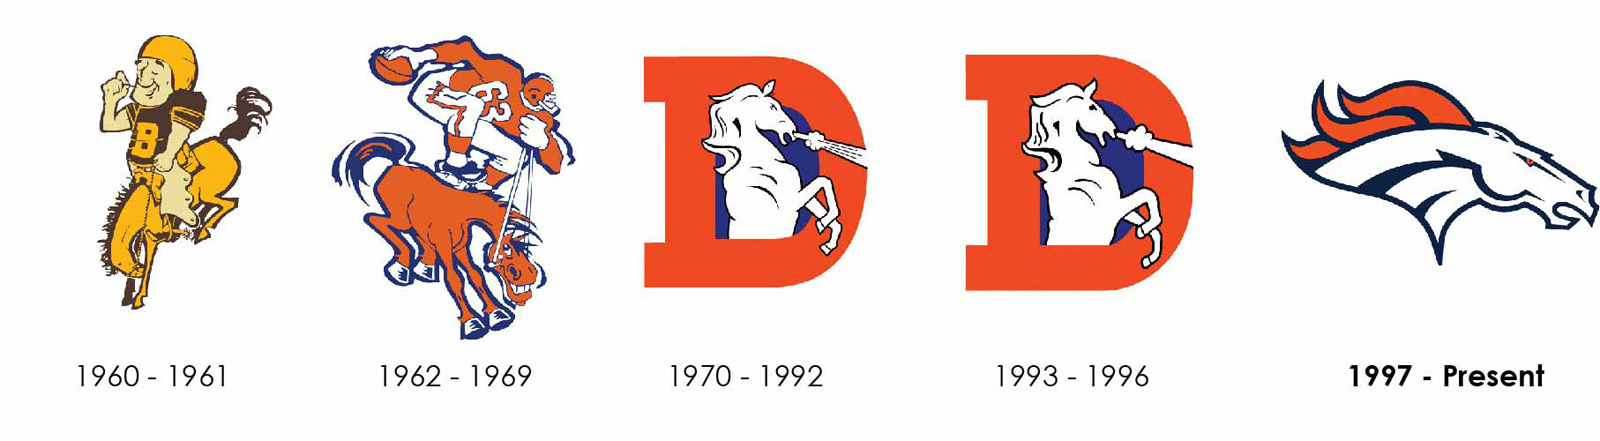 Broncos-Logo